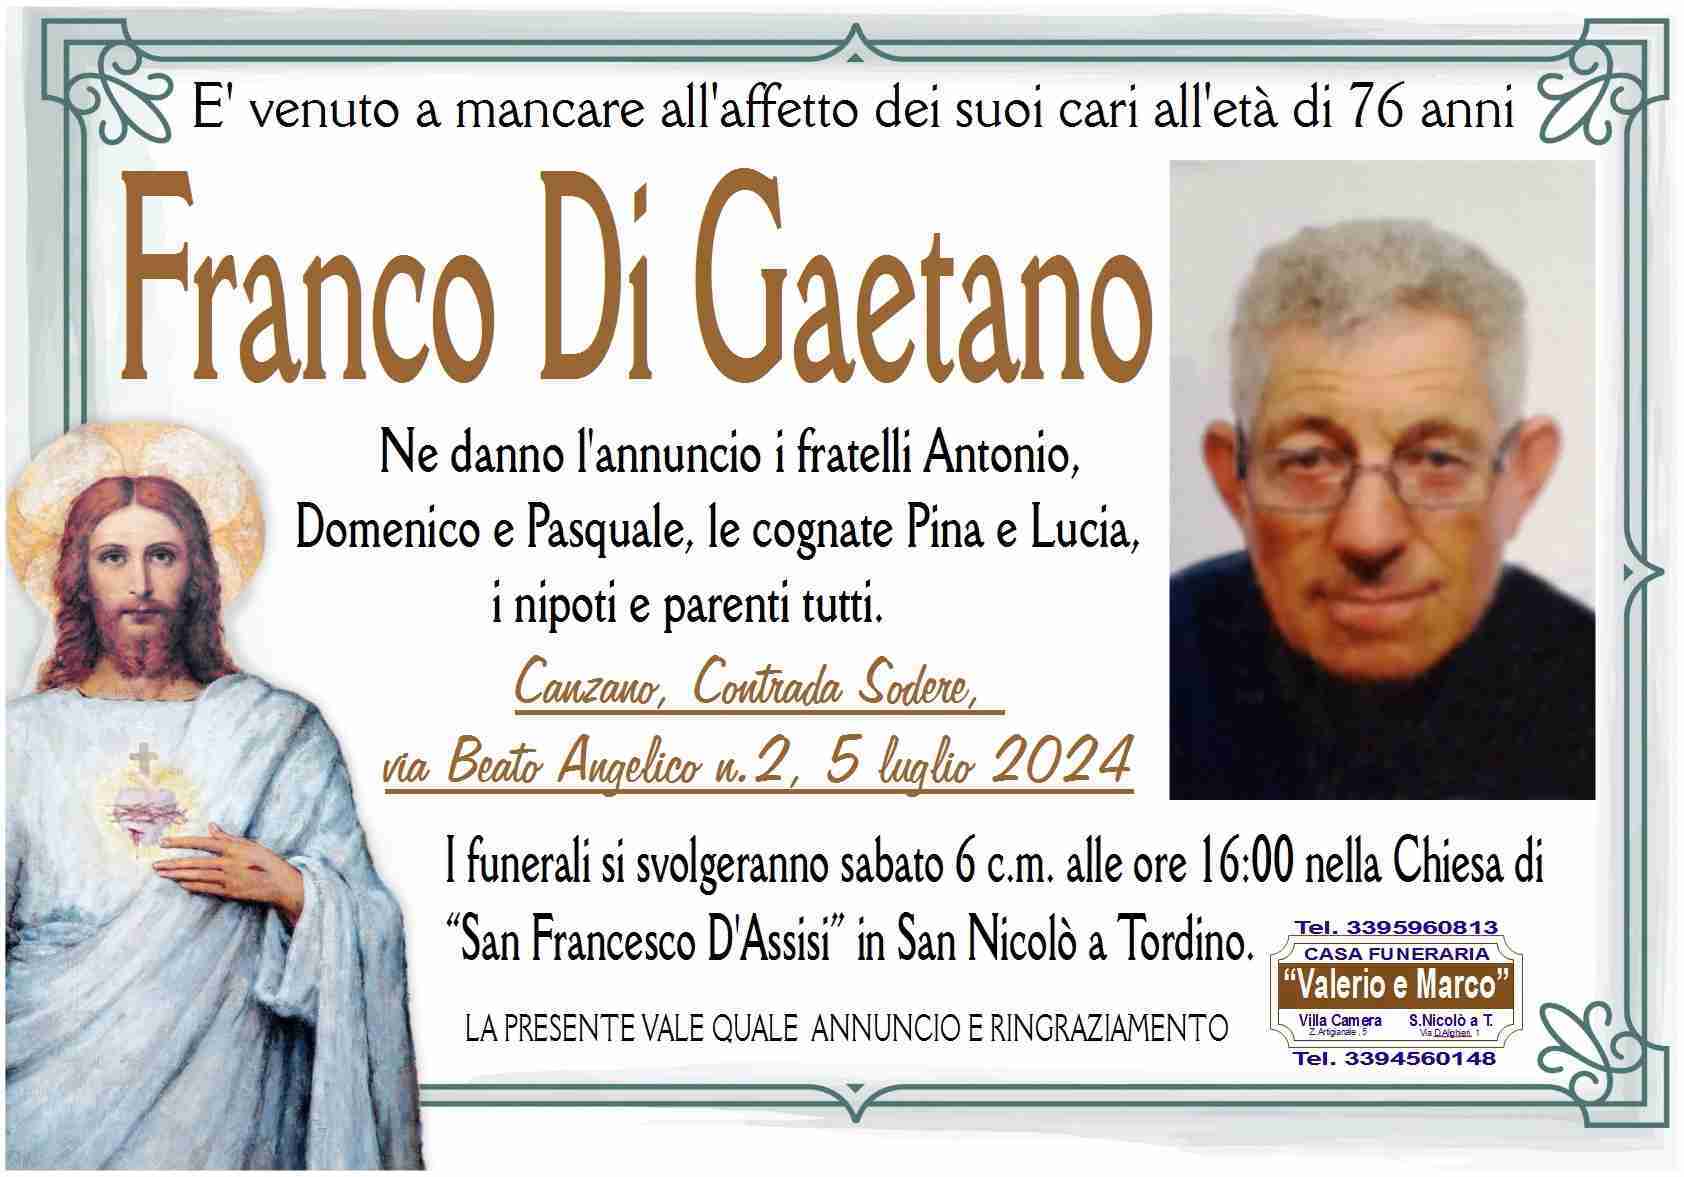 Franco Di Gaetano